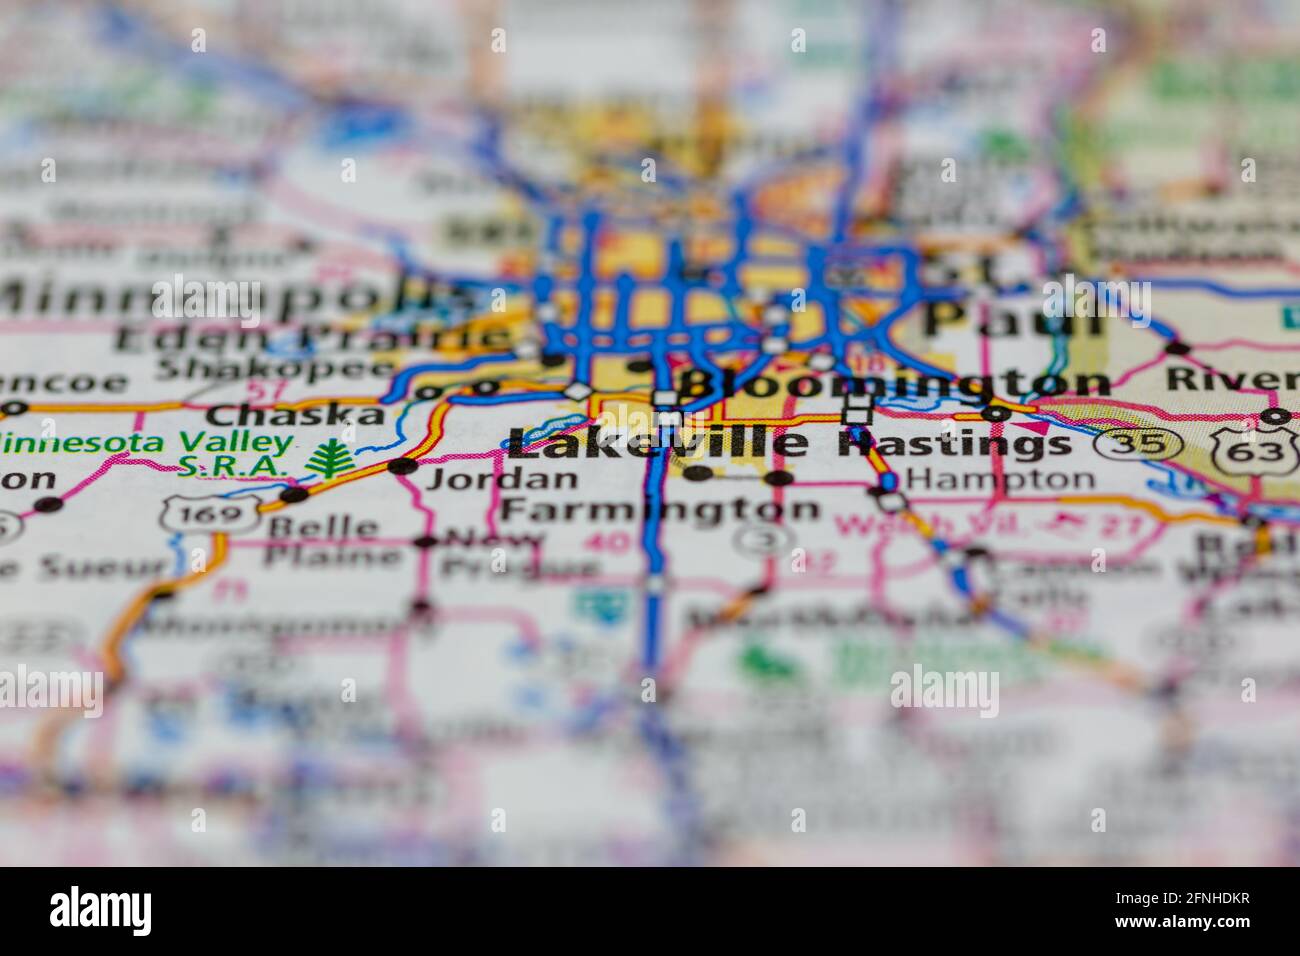 Lakeville Minnesota USA indiqué sur une carte de la géographie ou sur une route carte Banque D'Images